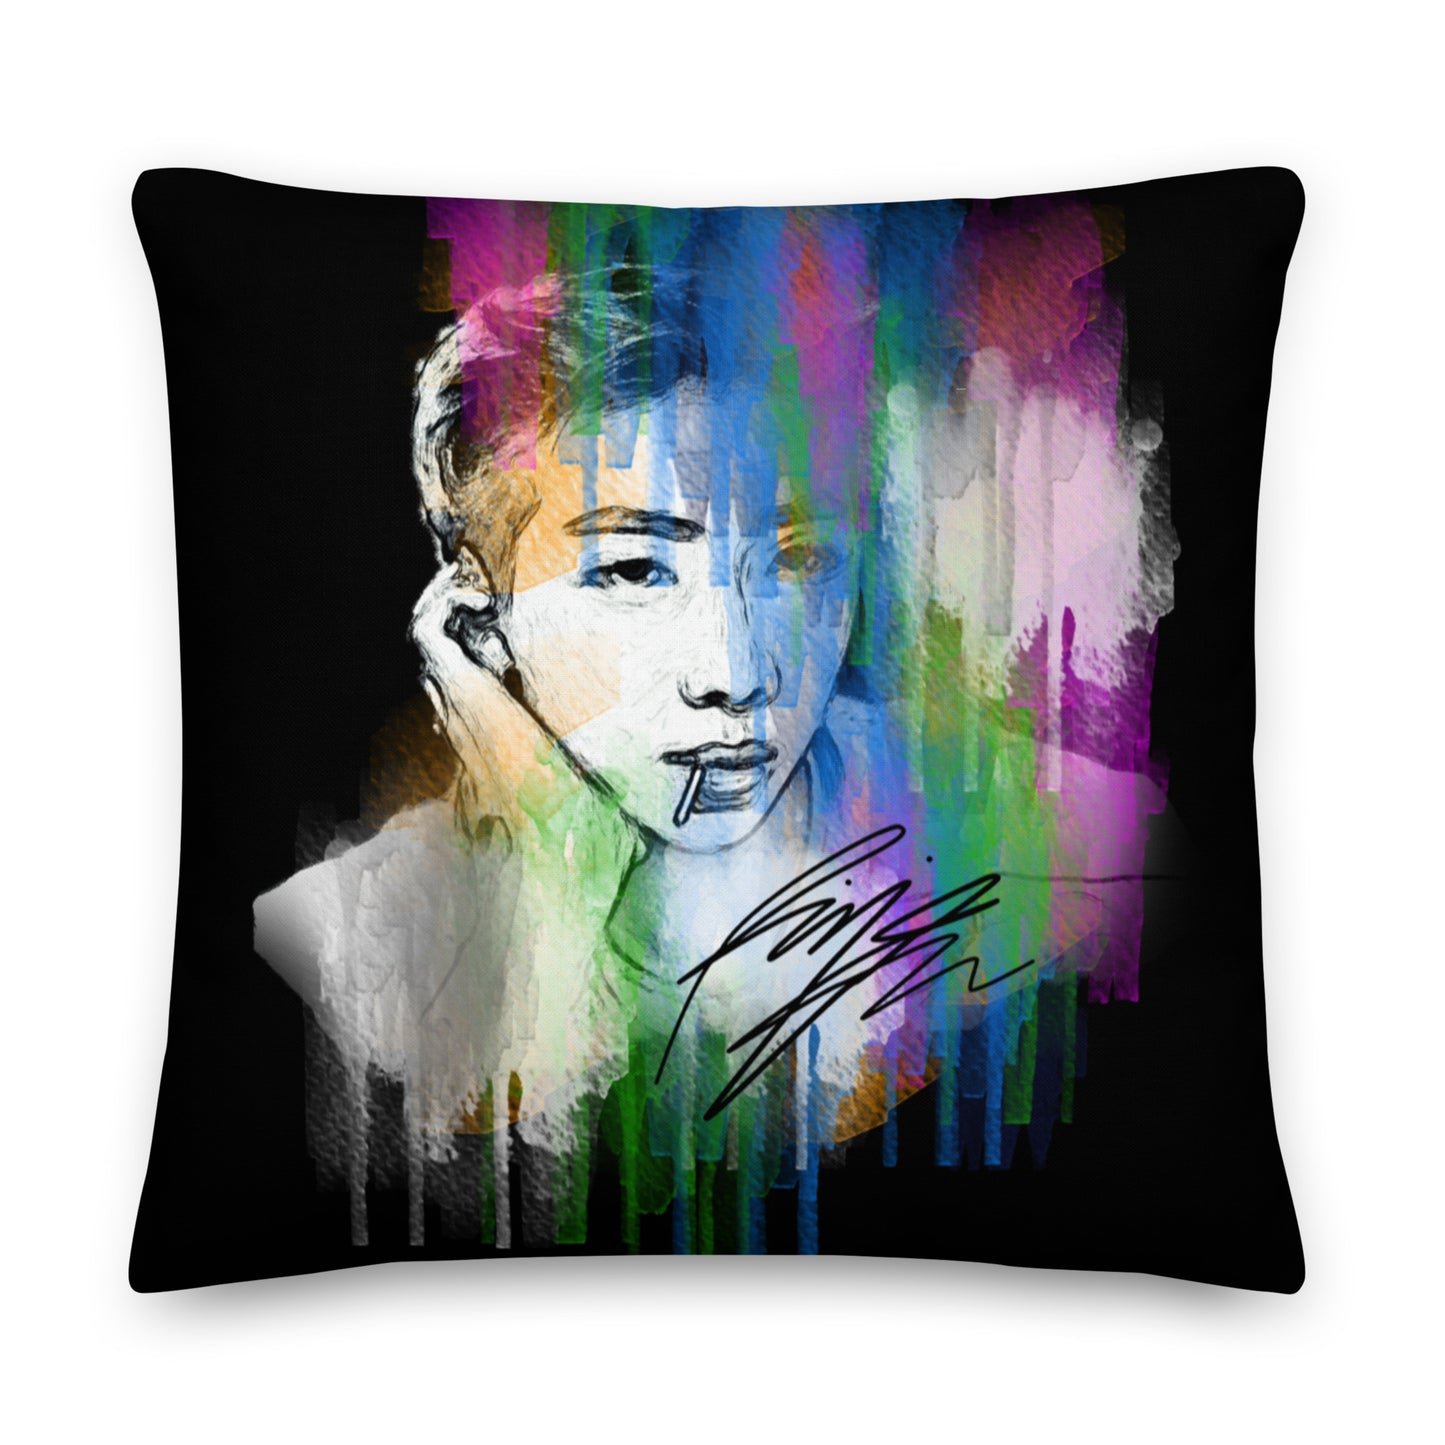 BTS RM, Kim Nam-joon Waterpaint Portrait Premium Pillow